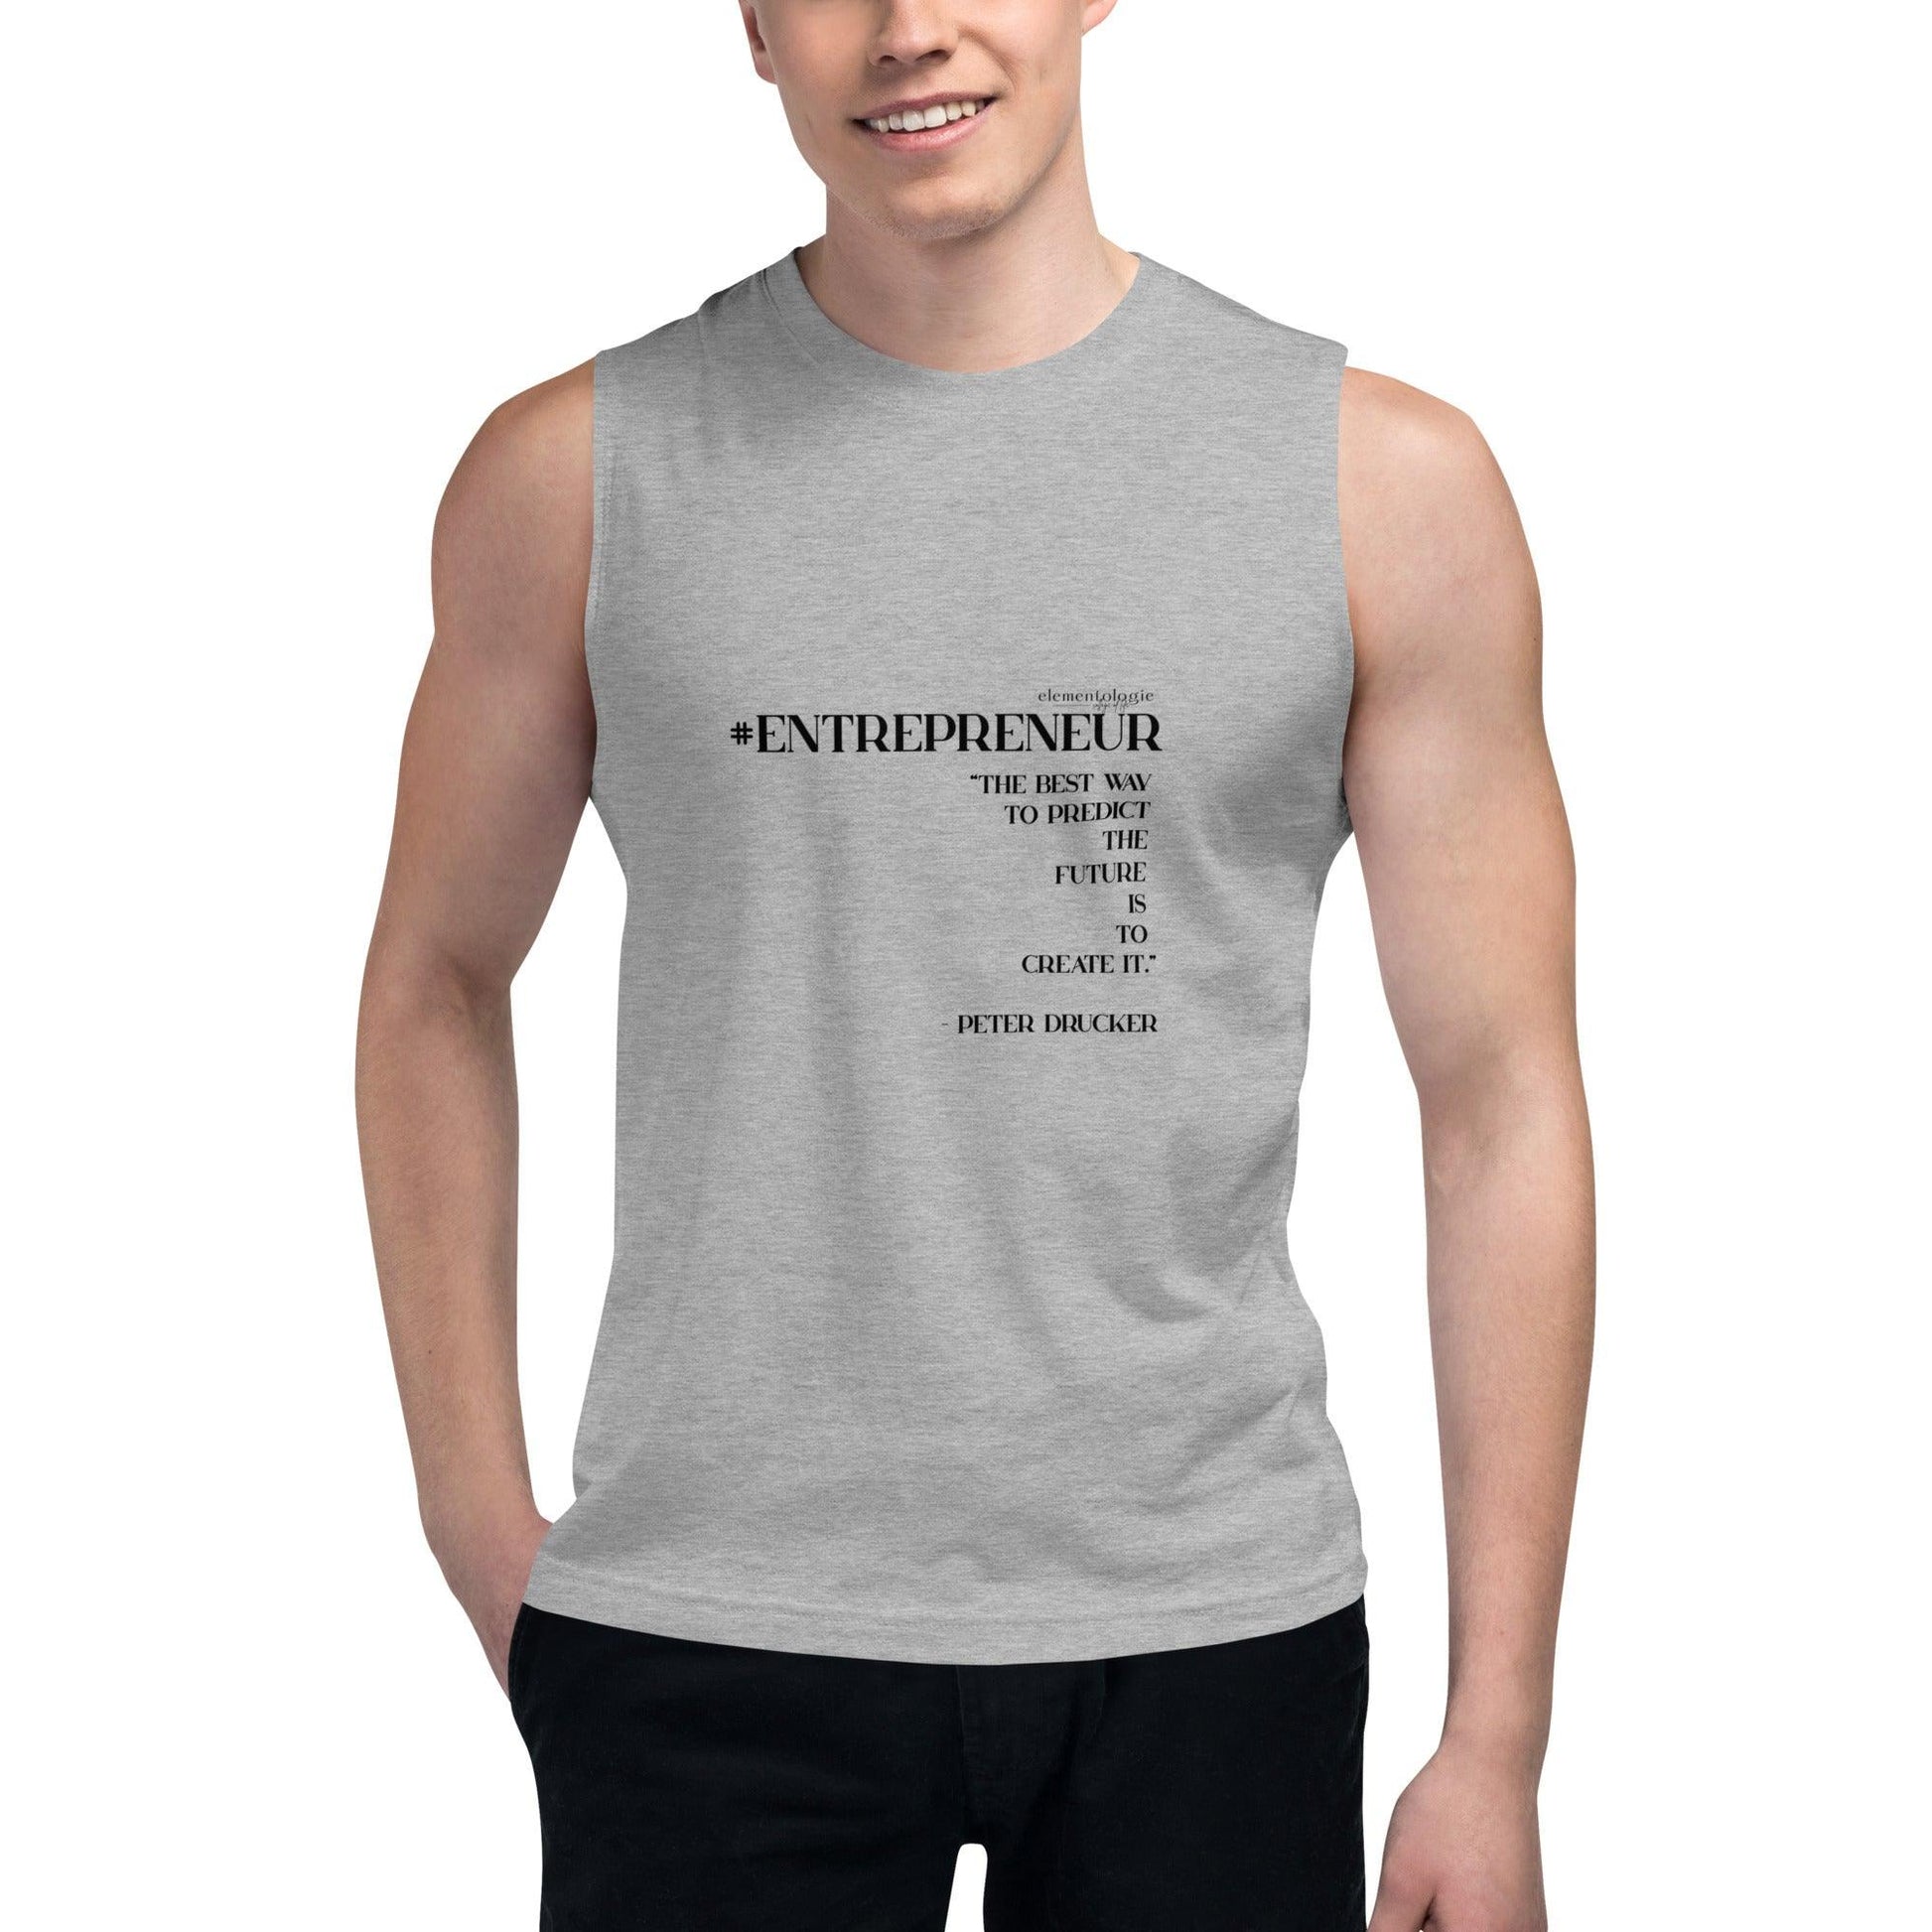 Unisex Muscle Shirt-#Entreprenuer - Elementologie